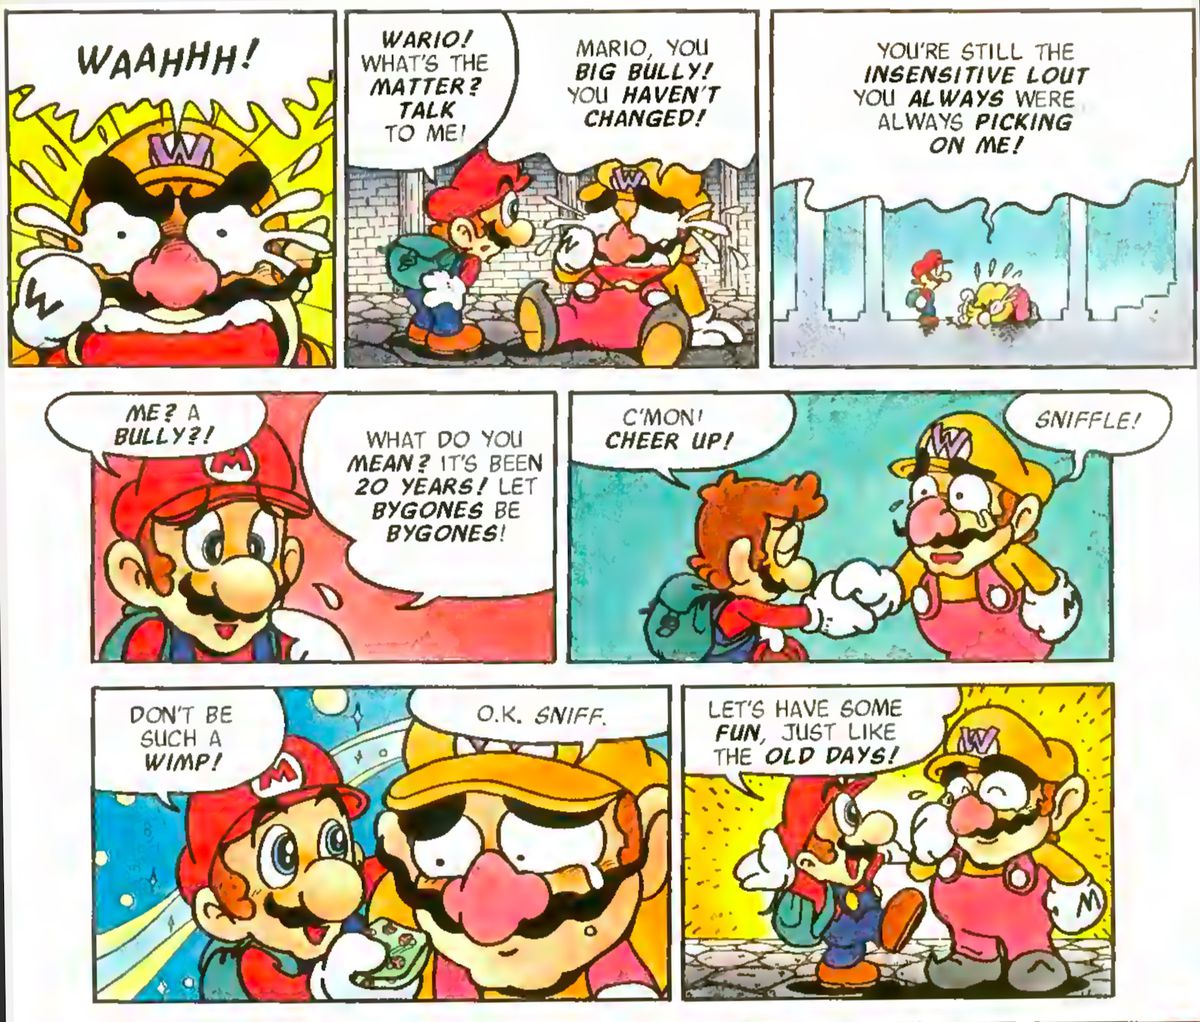 Wario cries, and Mario and Wario reconnect on a Mario vs. Wario # 1 page